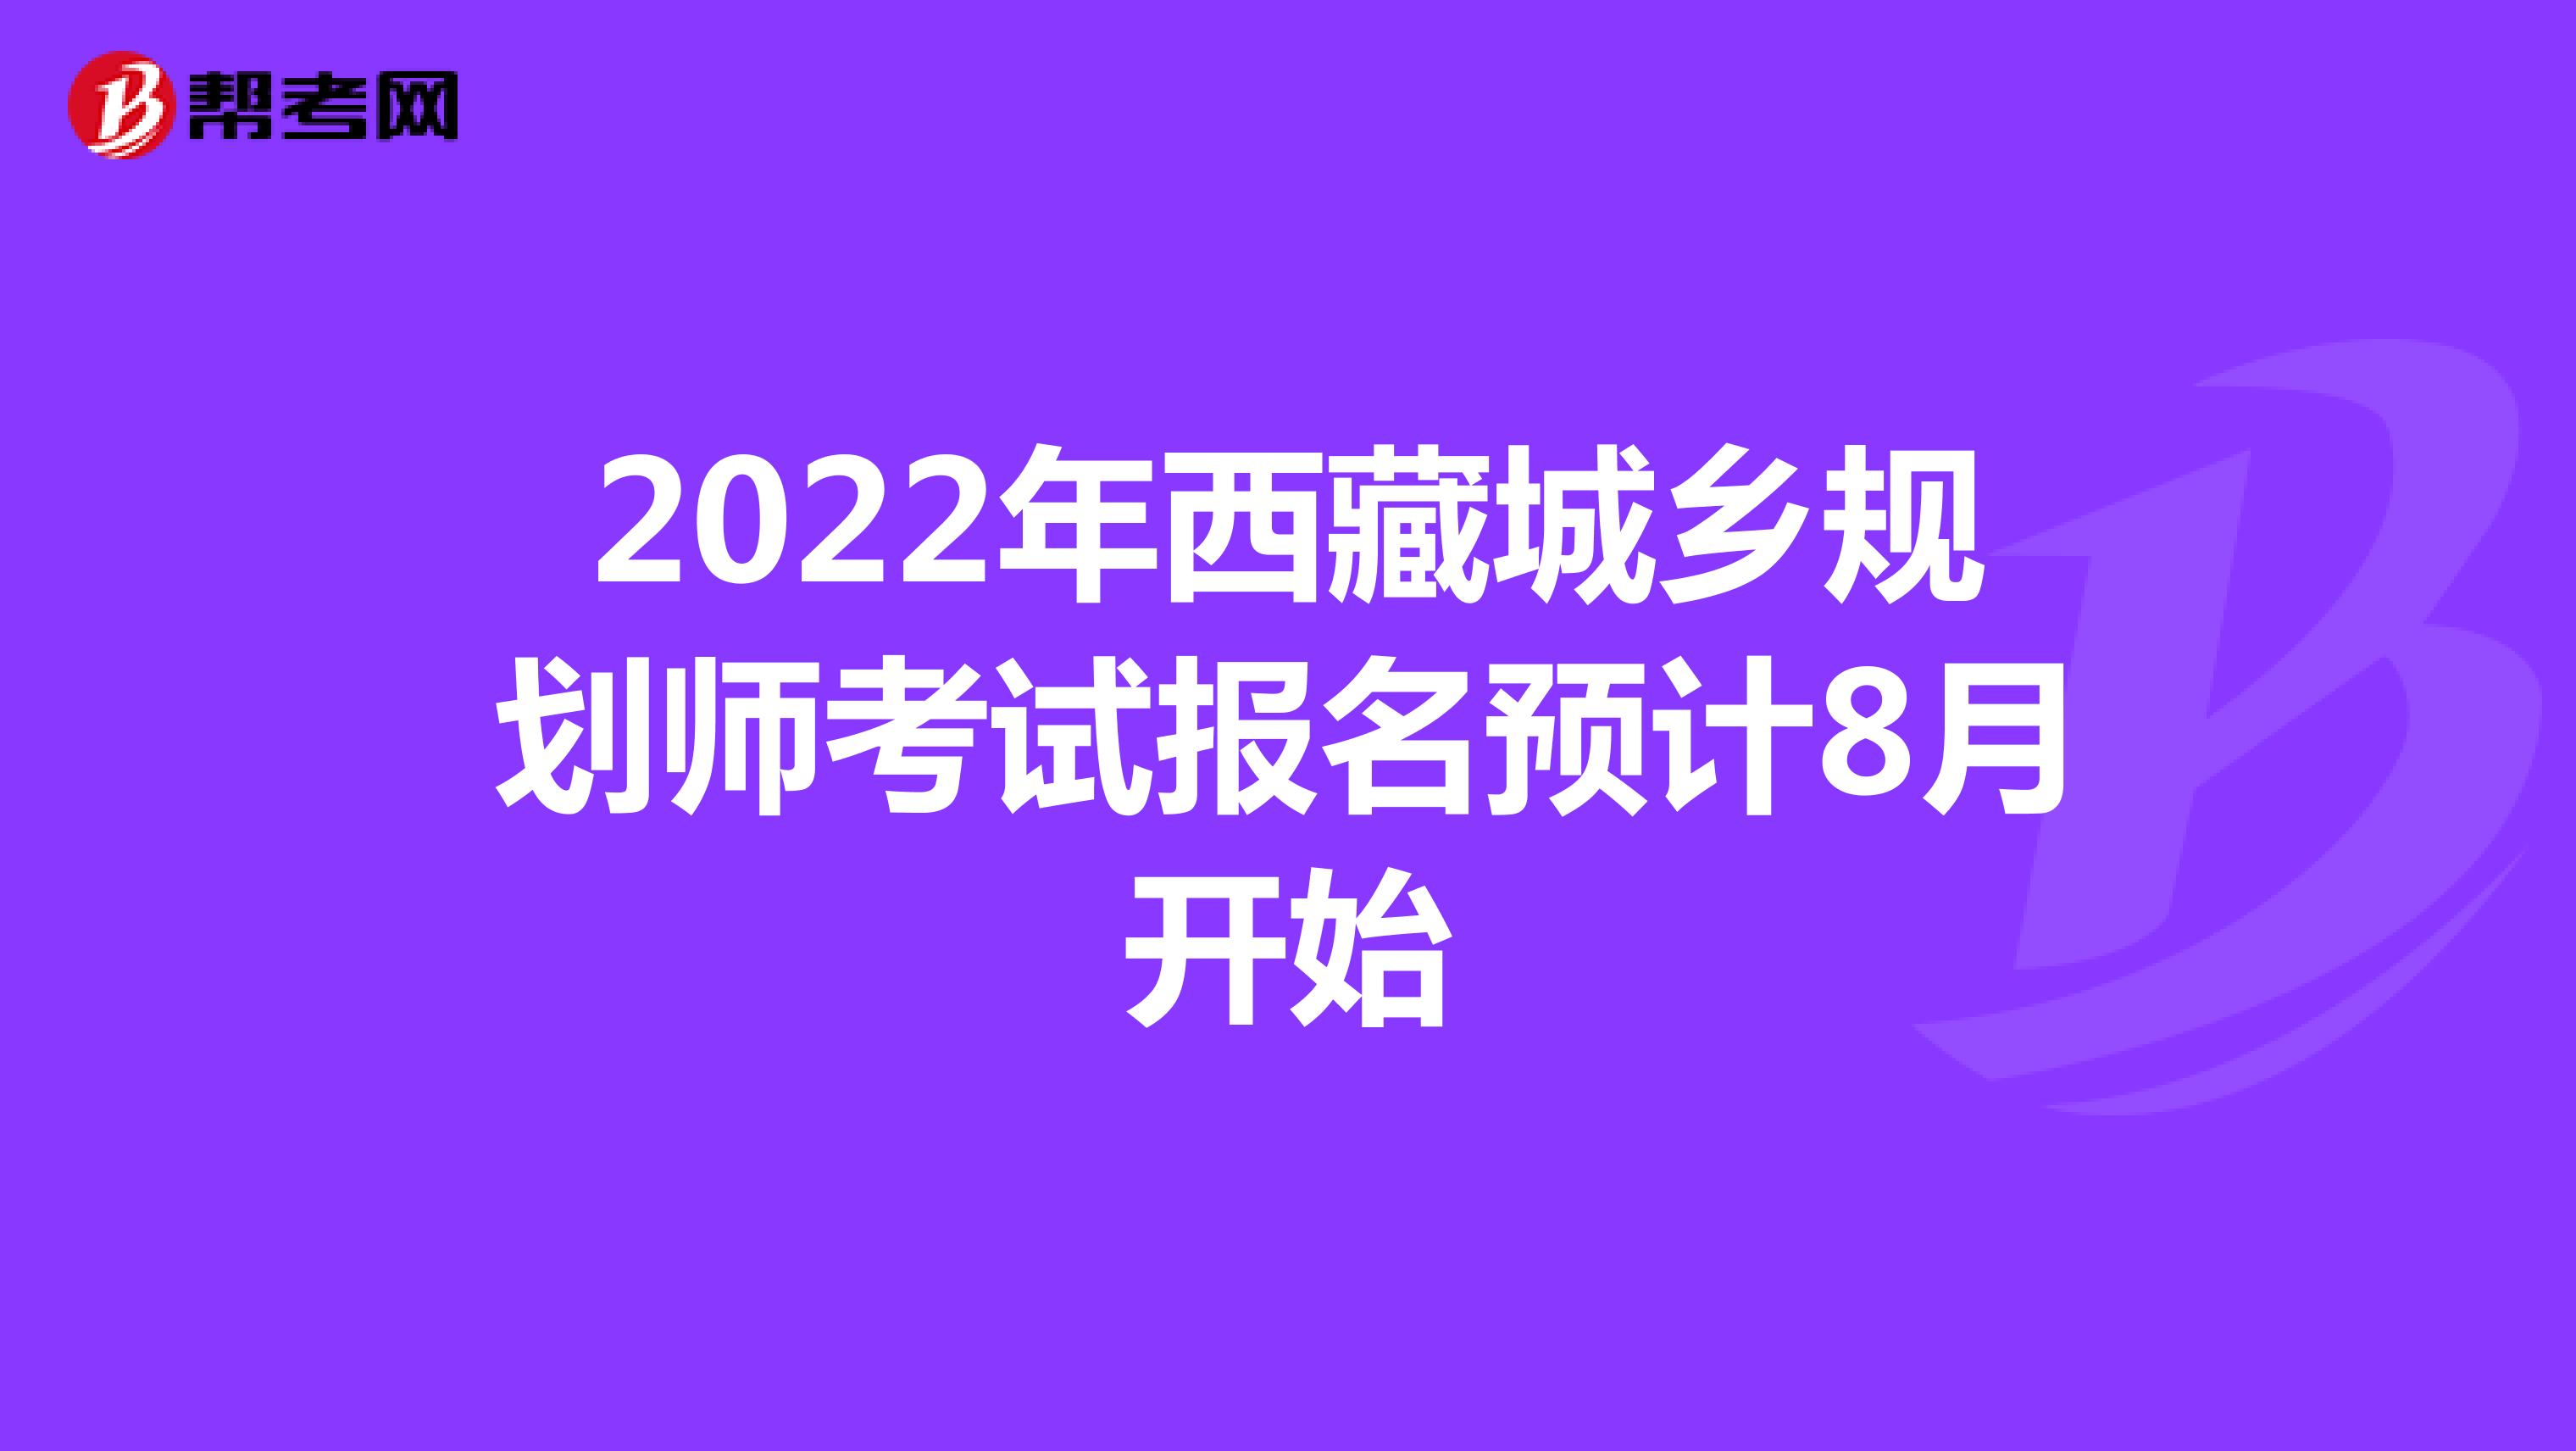 2022年西藏城乡规划师考试报名预计8月开始